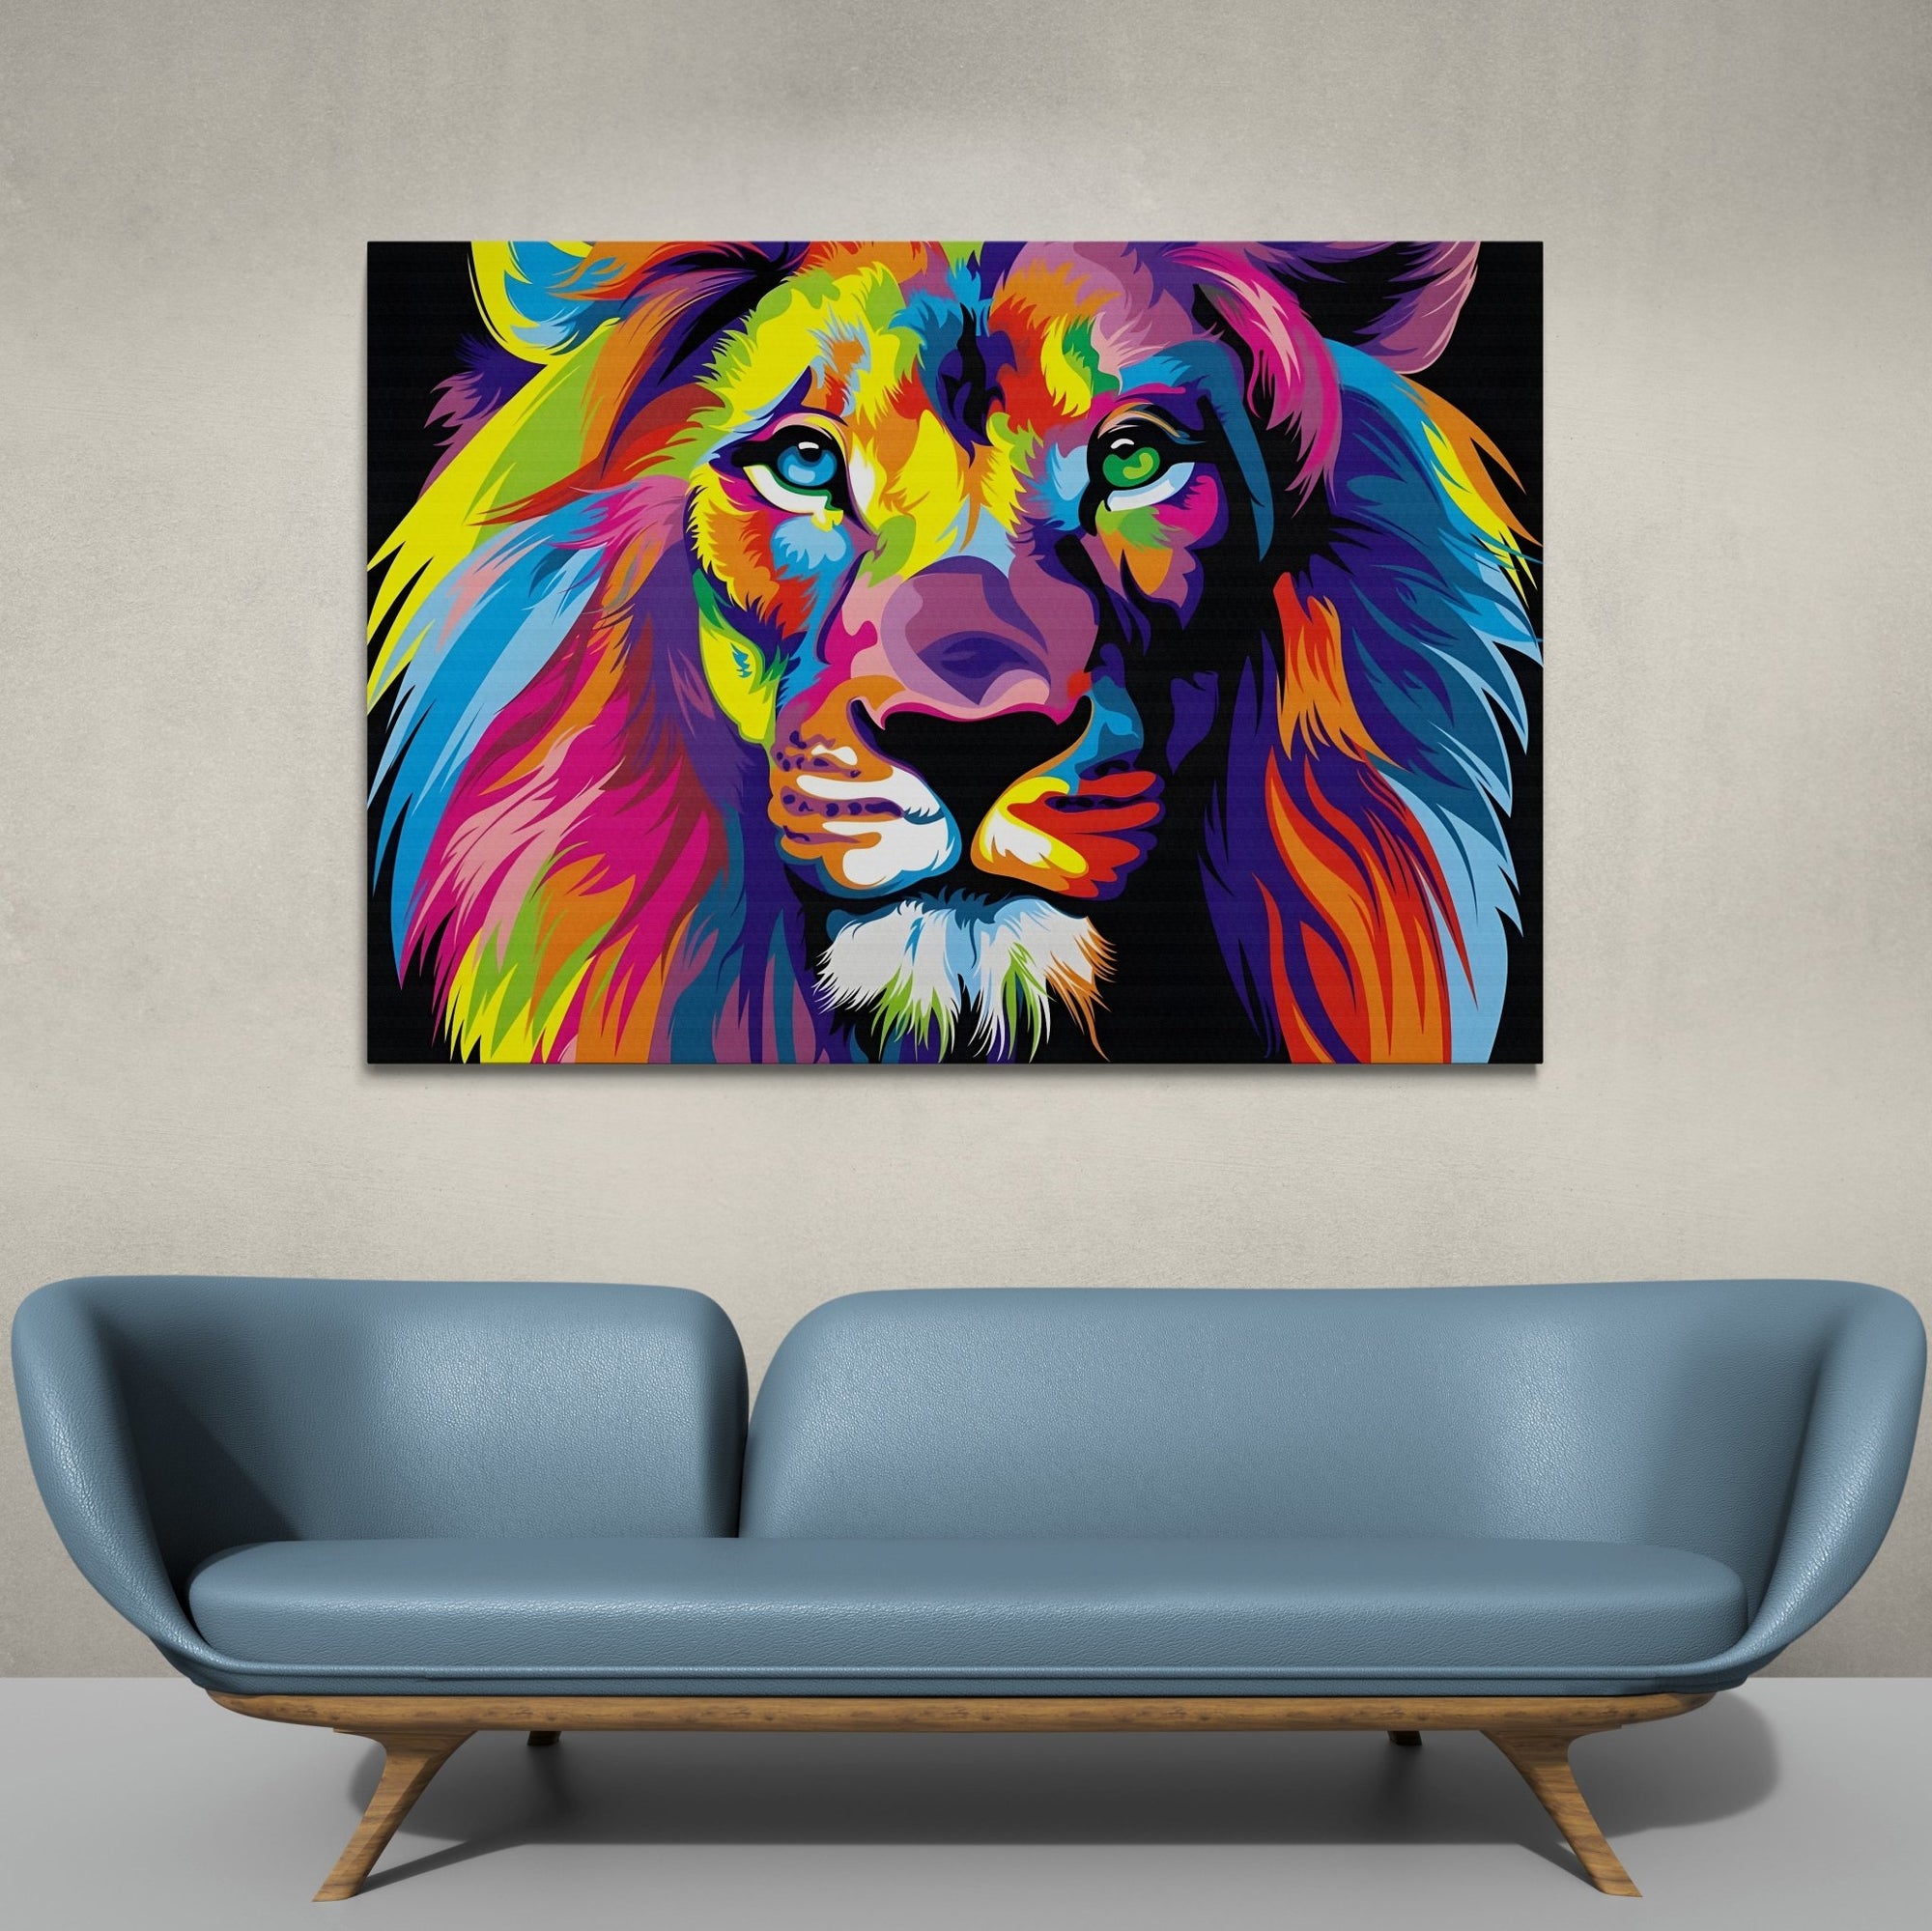 Lion Pop Art Canvas - The Trendy Art